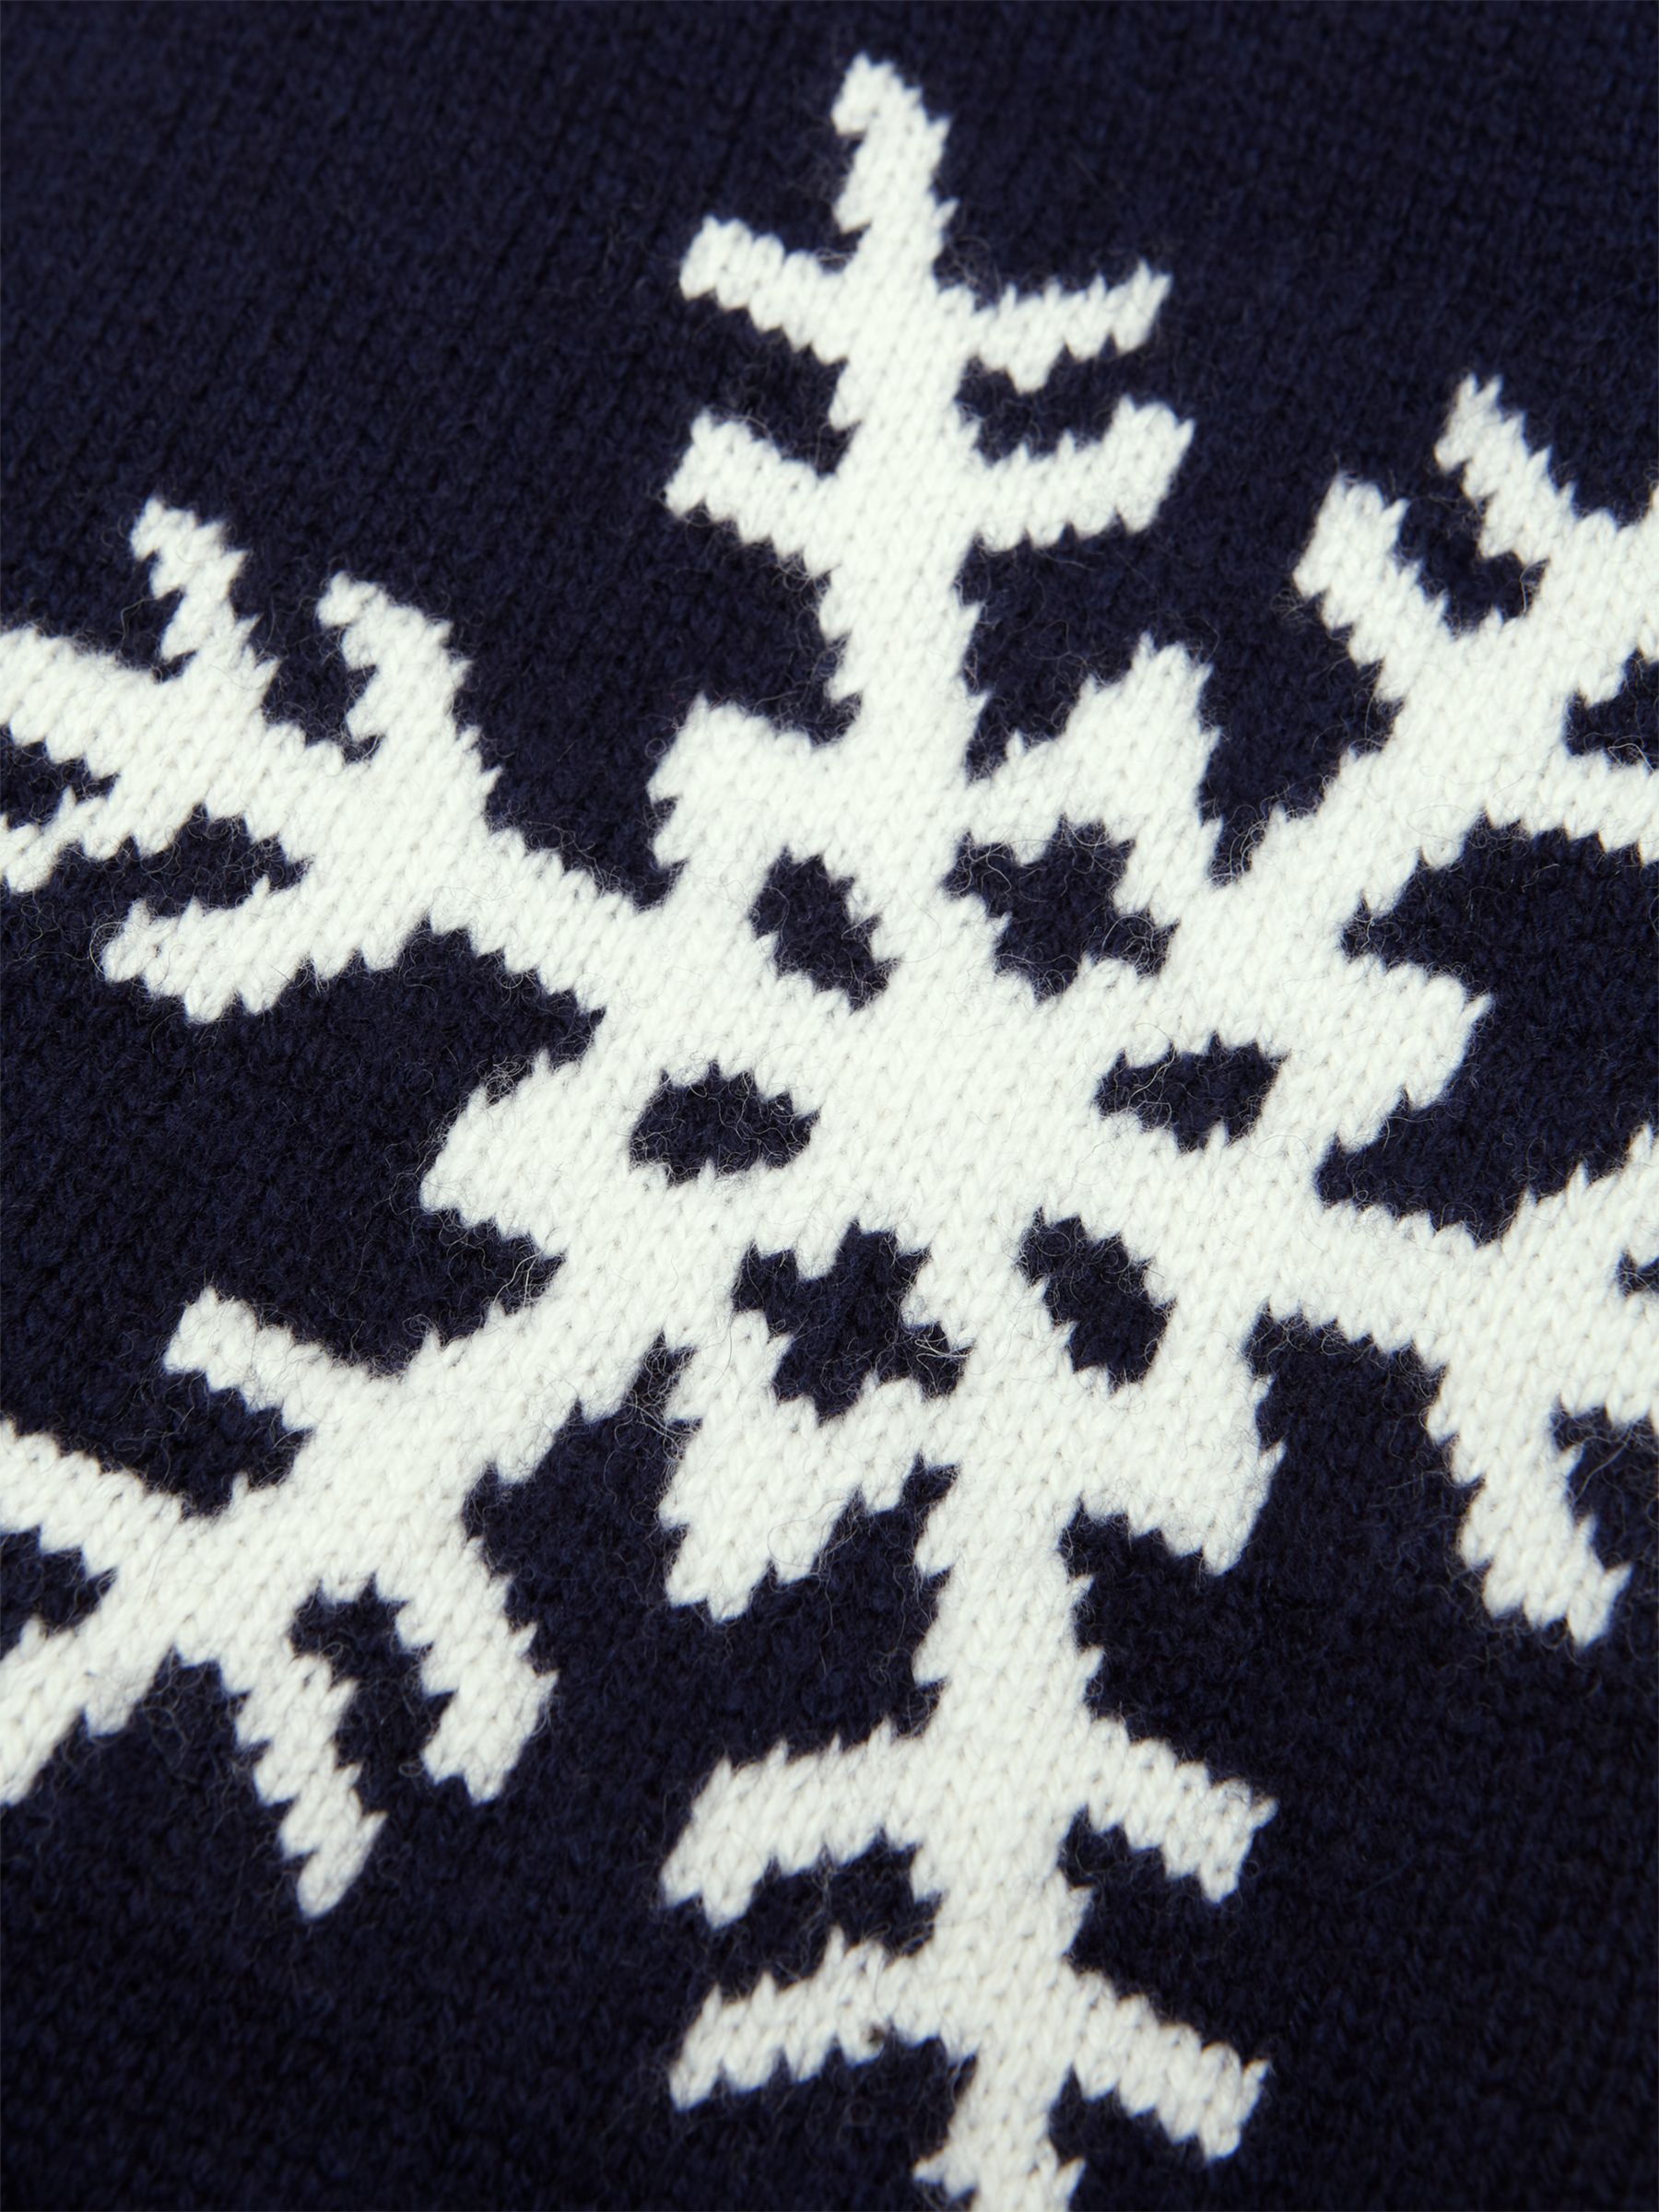 Buy Hobbs Emberlynn Snowflake Wool Blend Jumper, Navy/Ivory Online at johnlewis.com